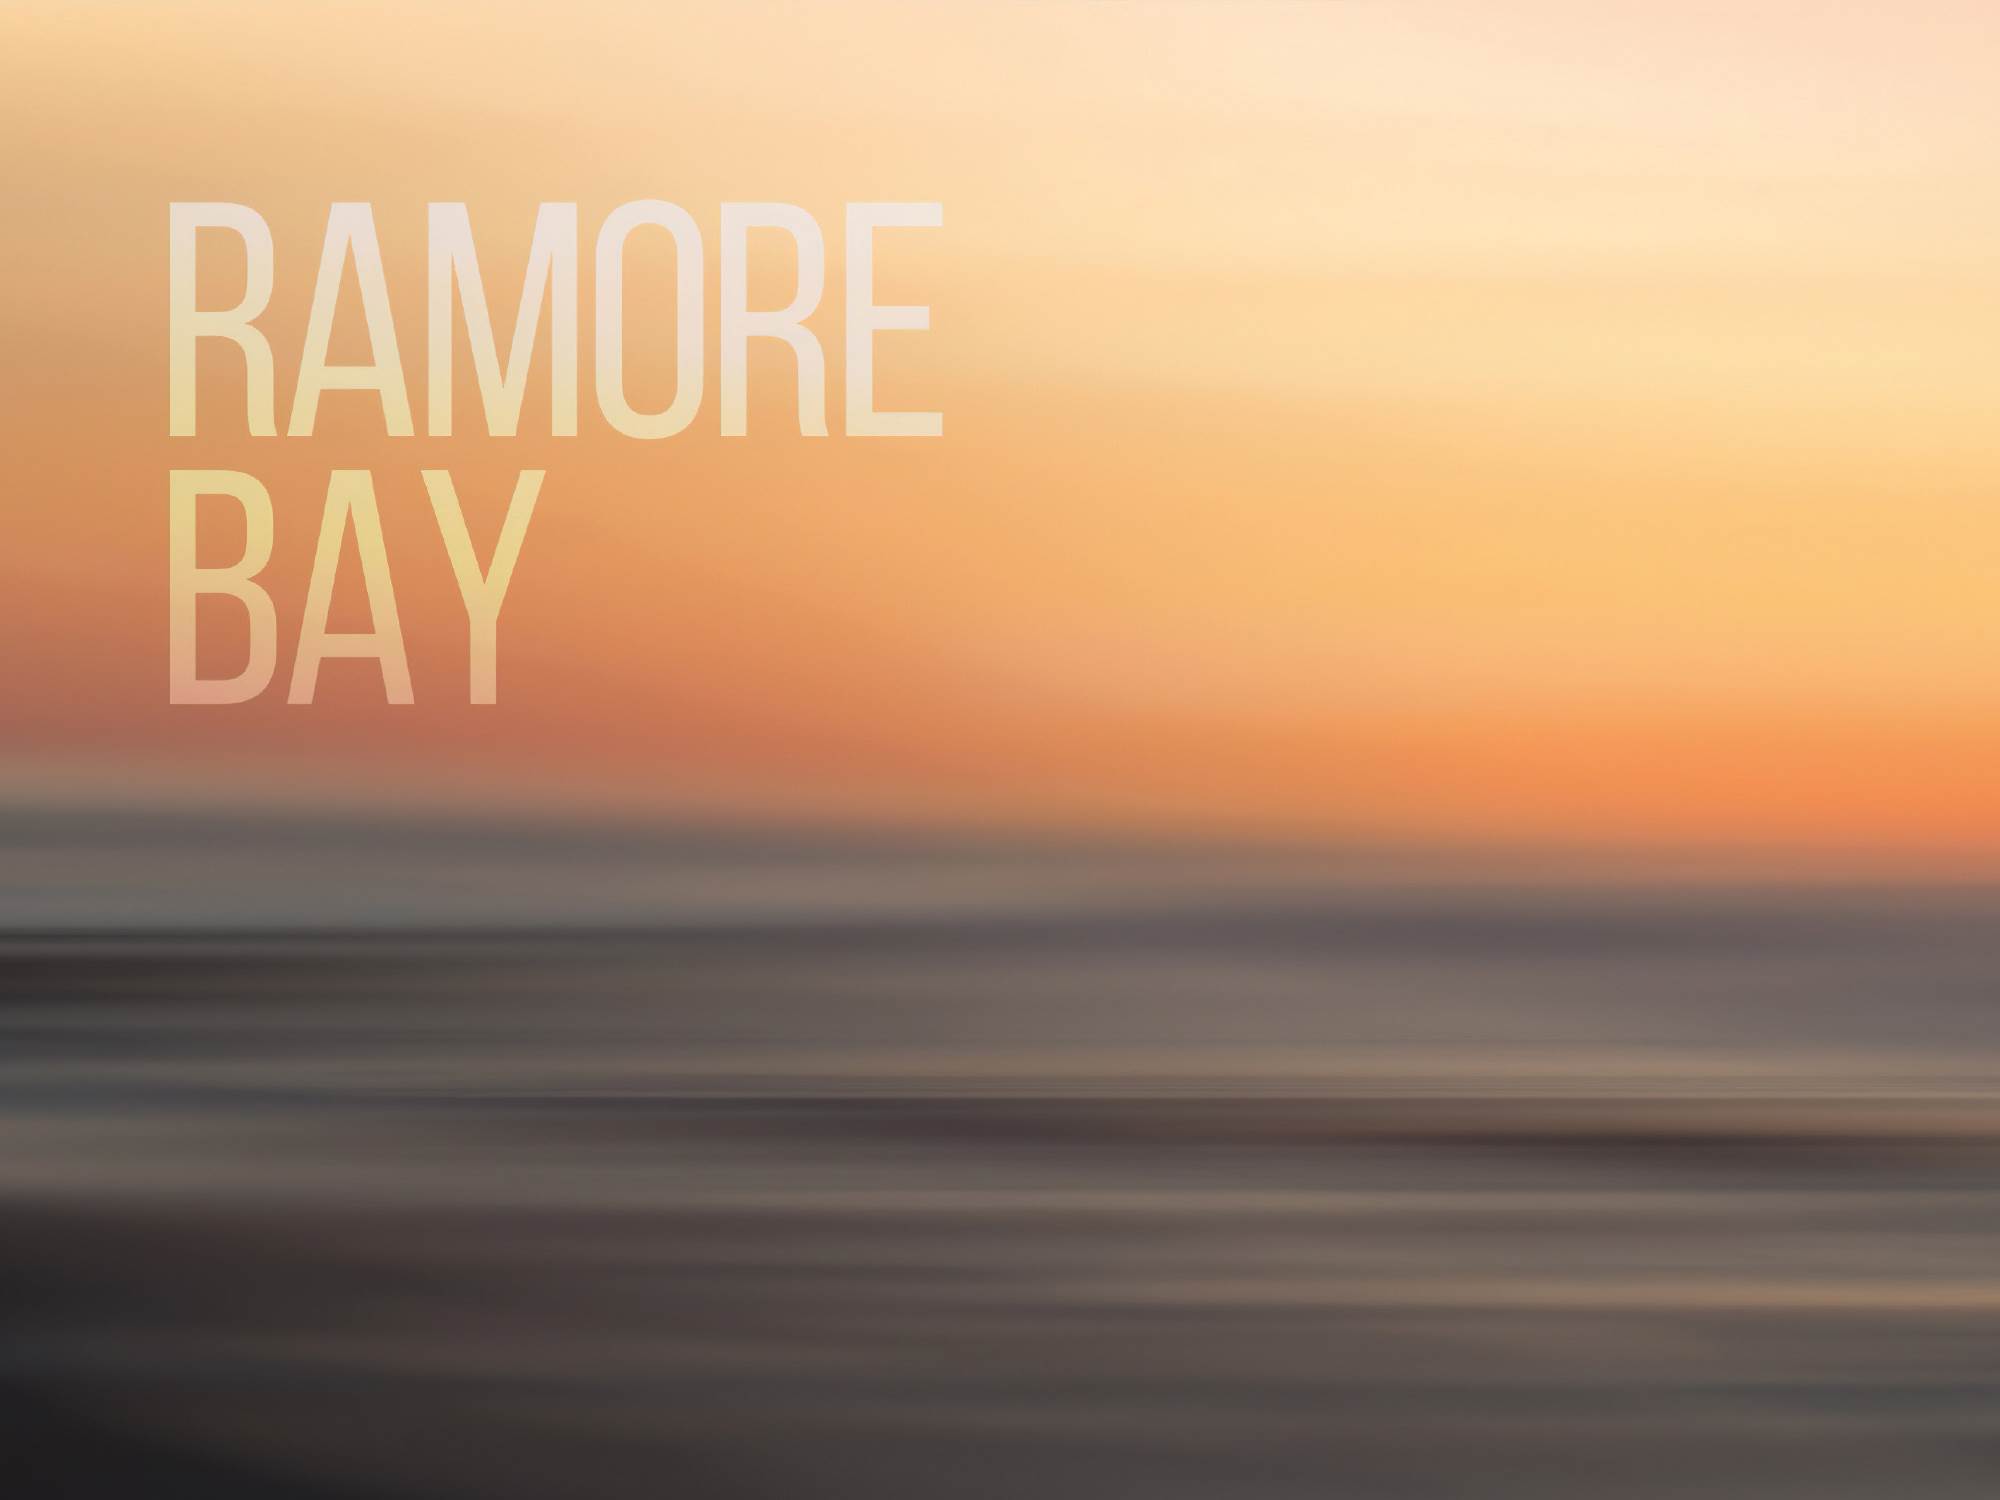 6 Ramore Bay